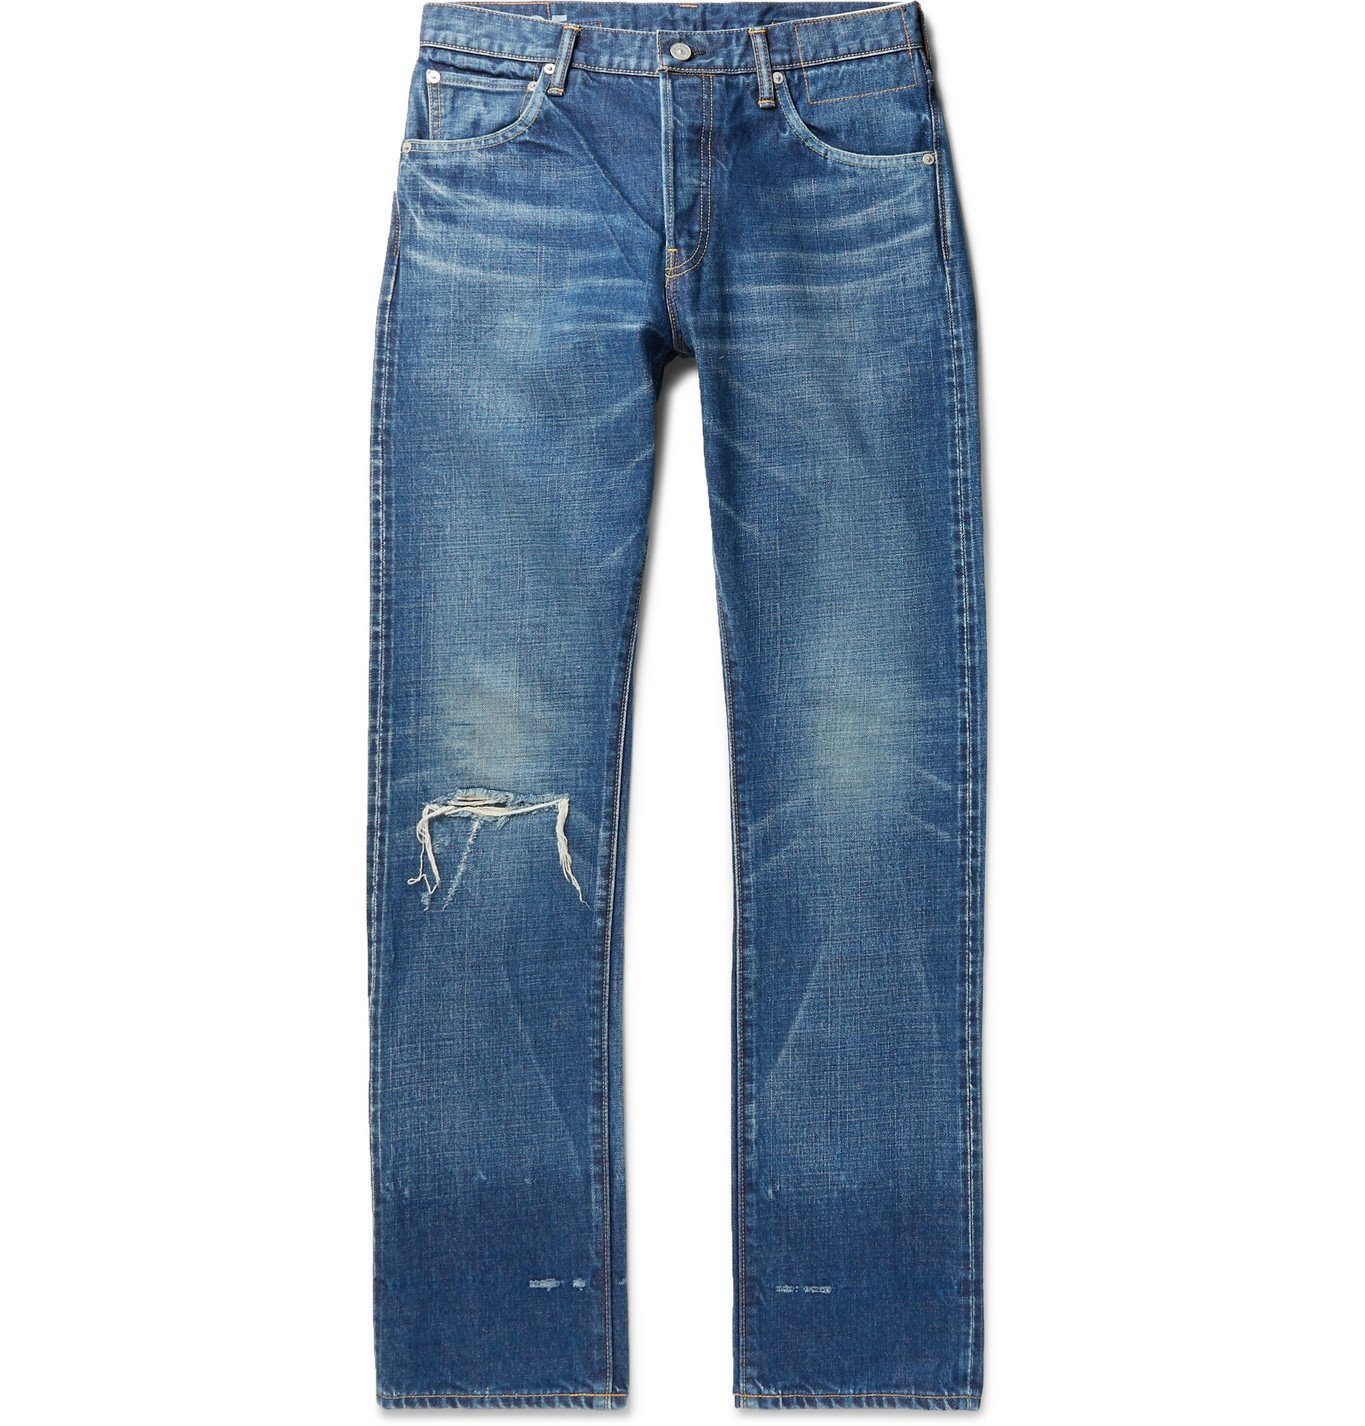 visvim - Social Sculpture 16 Damaged-25 Distressed Denim Jeans - Blue ...